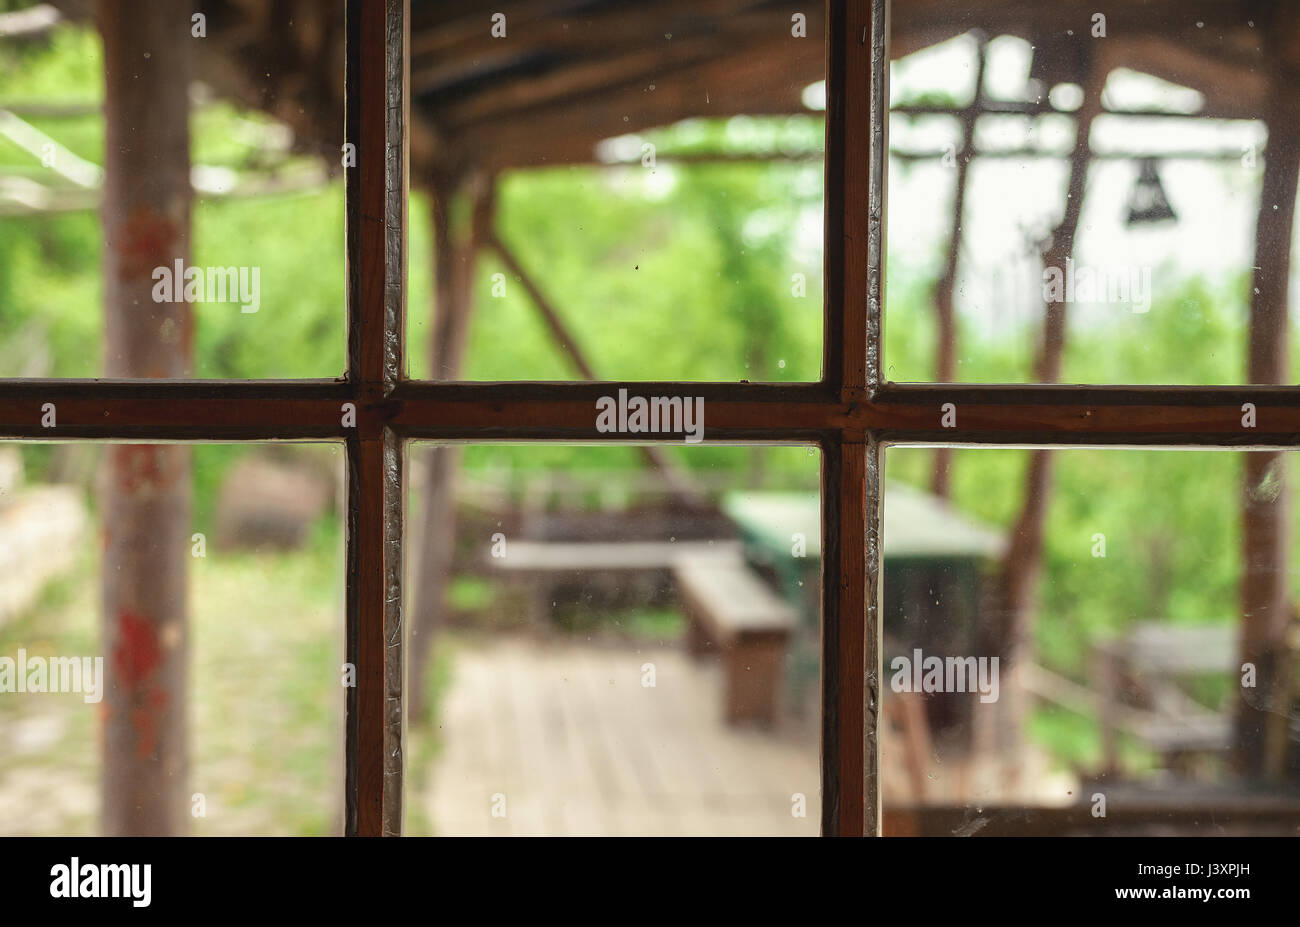 Vue rapprochée sur le cadre d'une ancienne fenêtre rétro, cadre en bois et verre sale détails. Banque D'Images